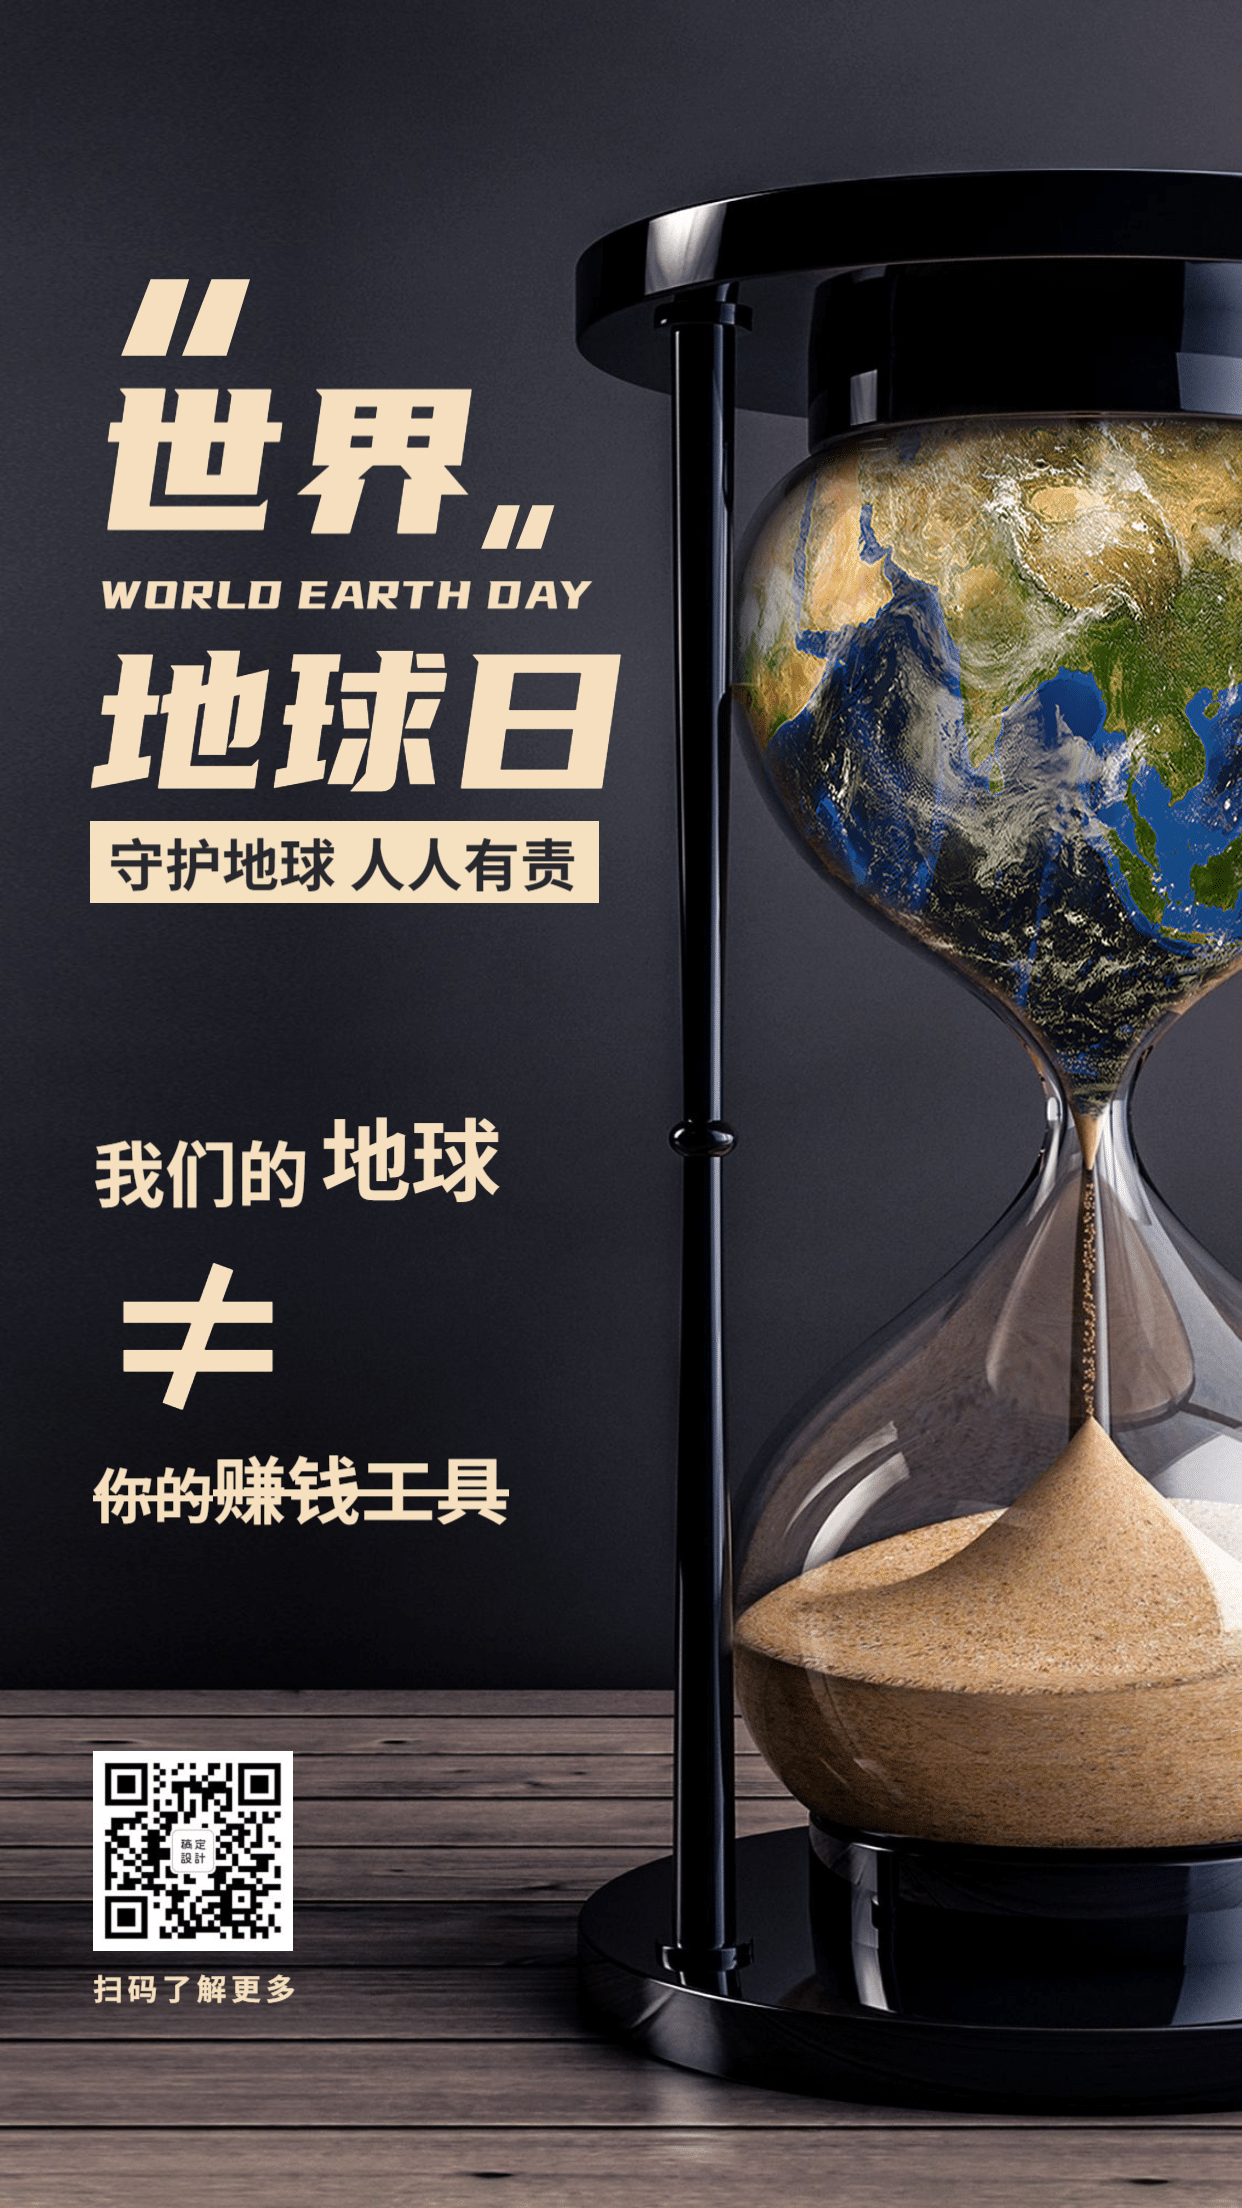 金融保险世界地球日环保沙漏排版海报预览效果